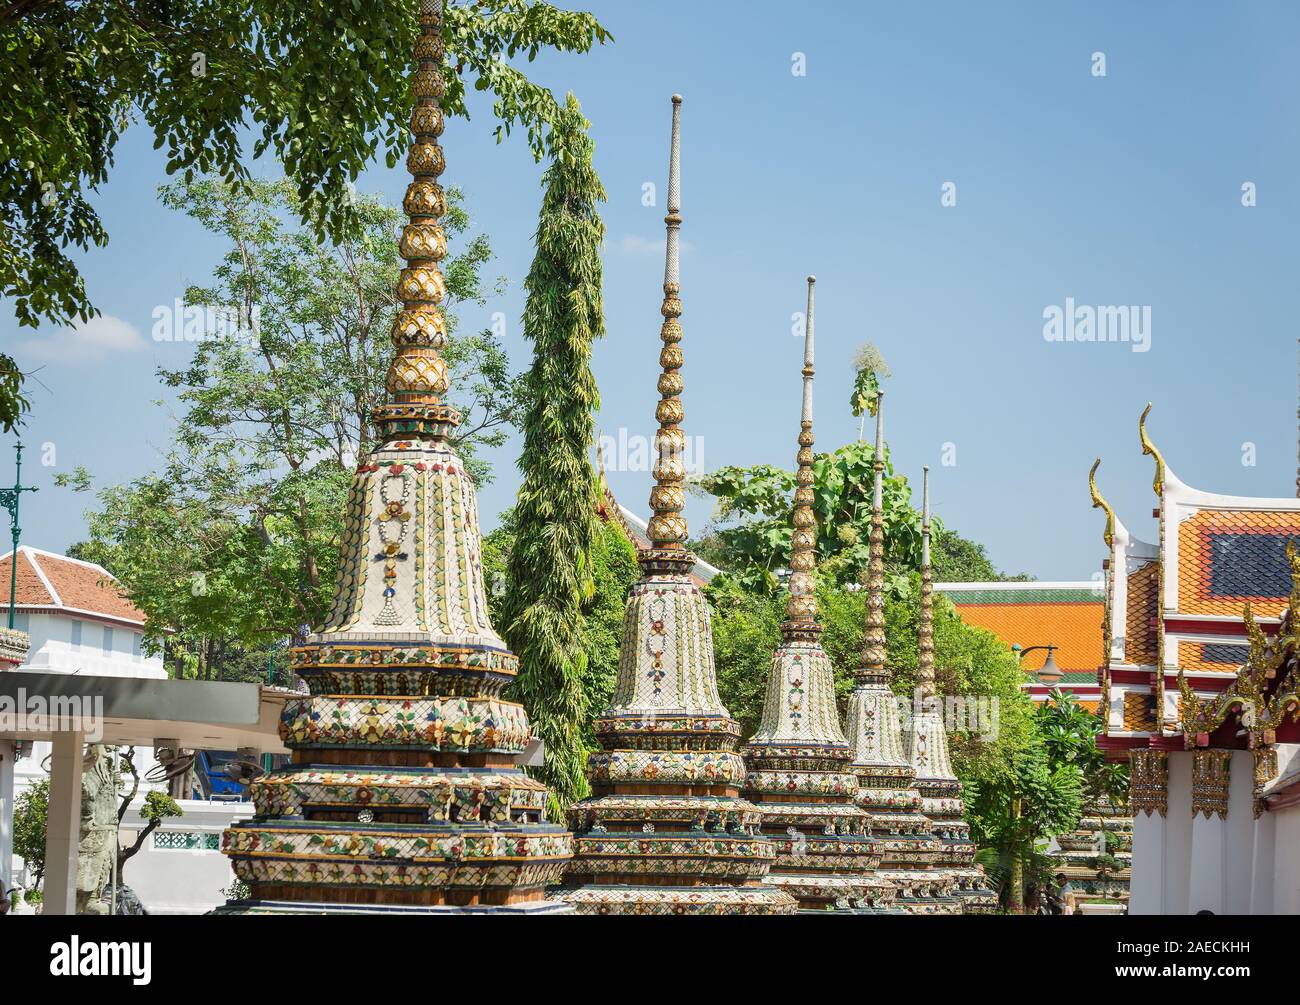 Tempel des Liegenden Buddha Wat Pho auf der Rattanakosin Insel neben dem Grand Palace. Bangkok, Thailand. Stockfoto